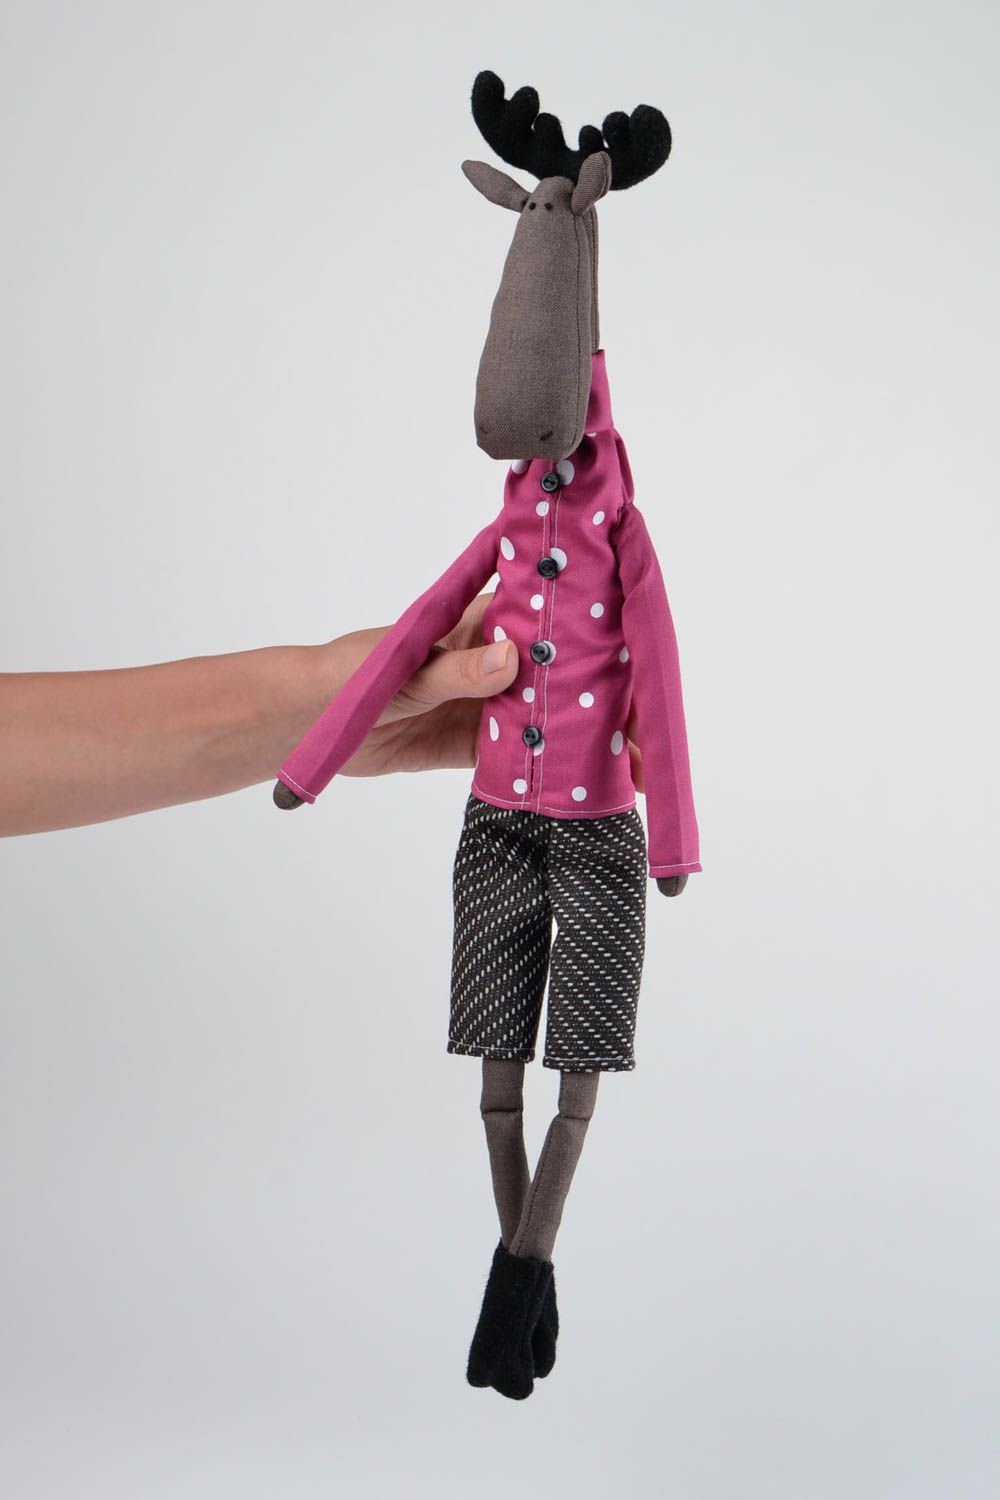 Игрушка лось ручной работы мягкая игрушка подарок ребенку и на новоселье фото 2